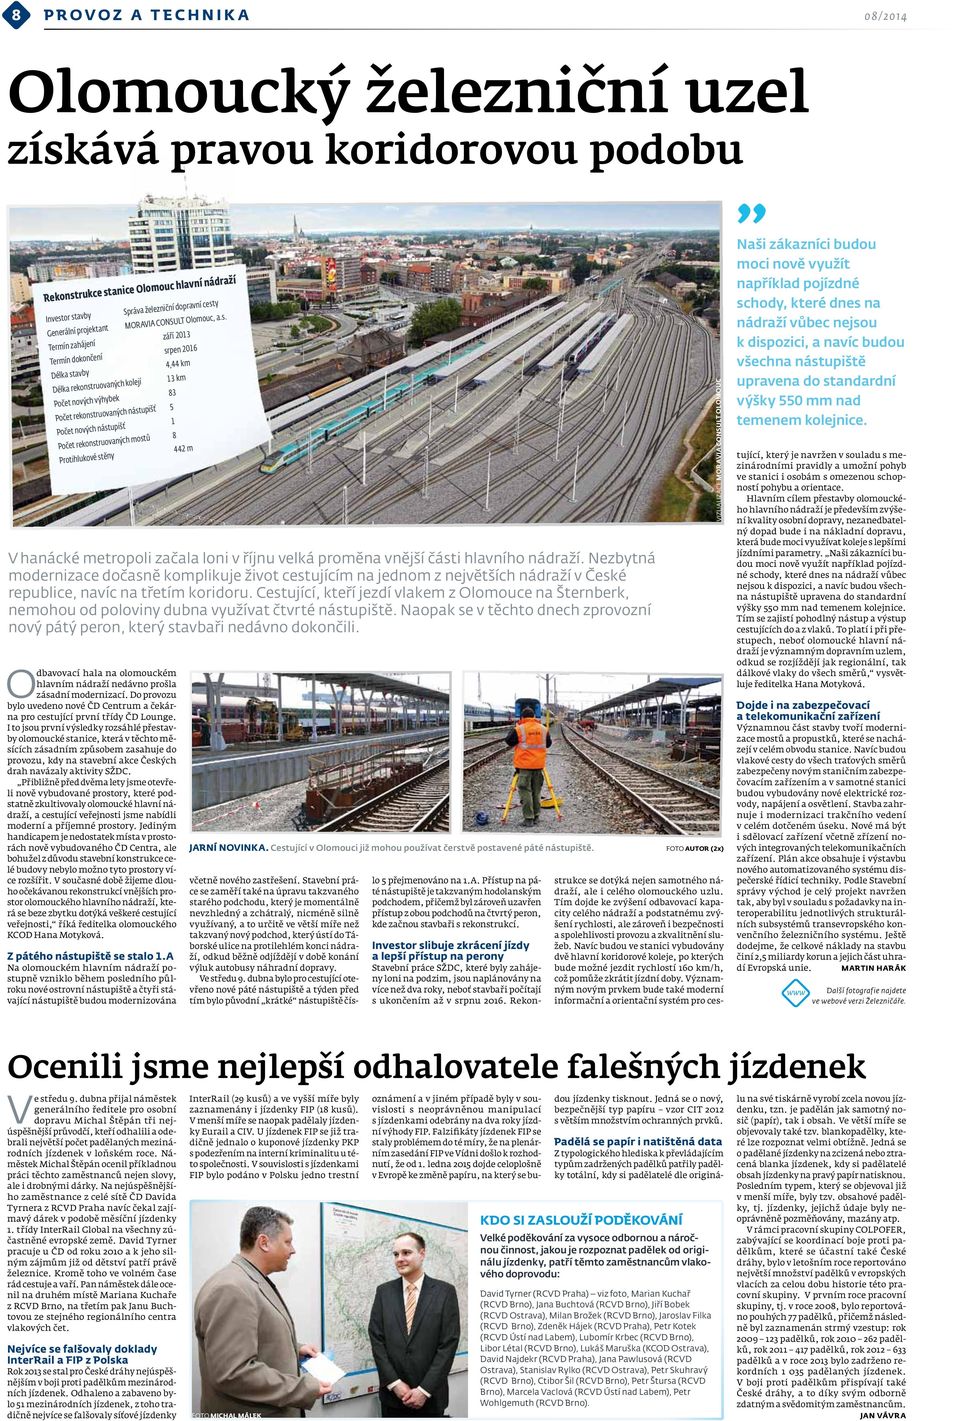 Cestující, kteří jezdí vlakem z Olomouce na Šternberk, nemohou od poloviny dubna využívat čtvrté nástupiště. Naopak se v těchto dnech zprovozní nový pátý peron, který stavbaři nedávno dokončili.